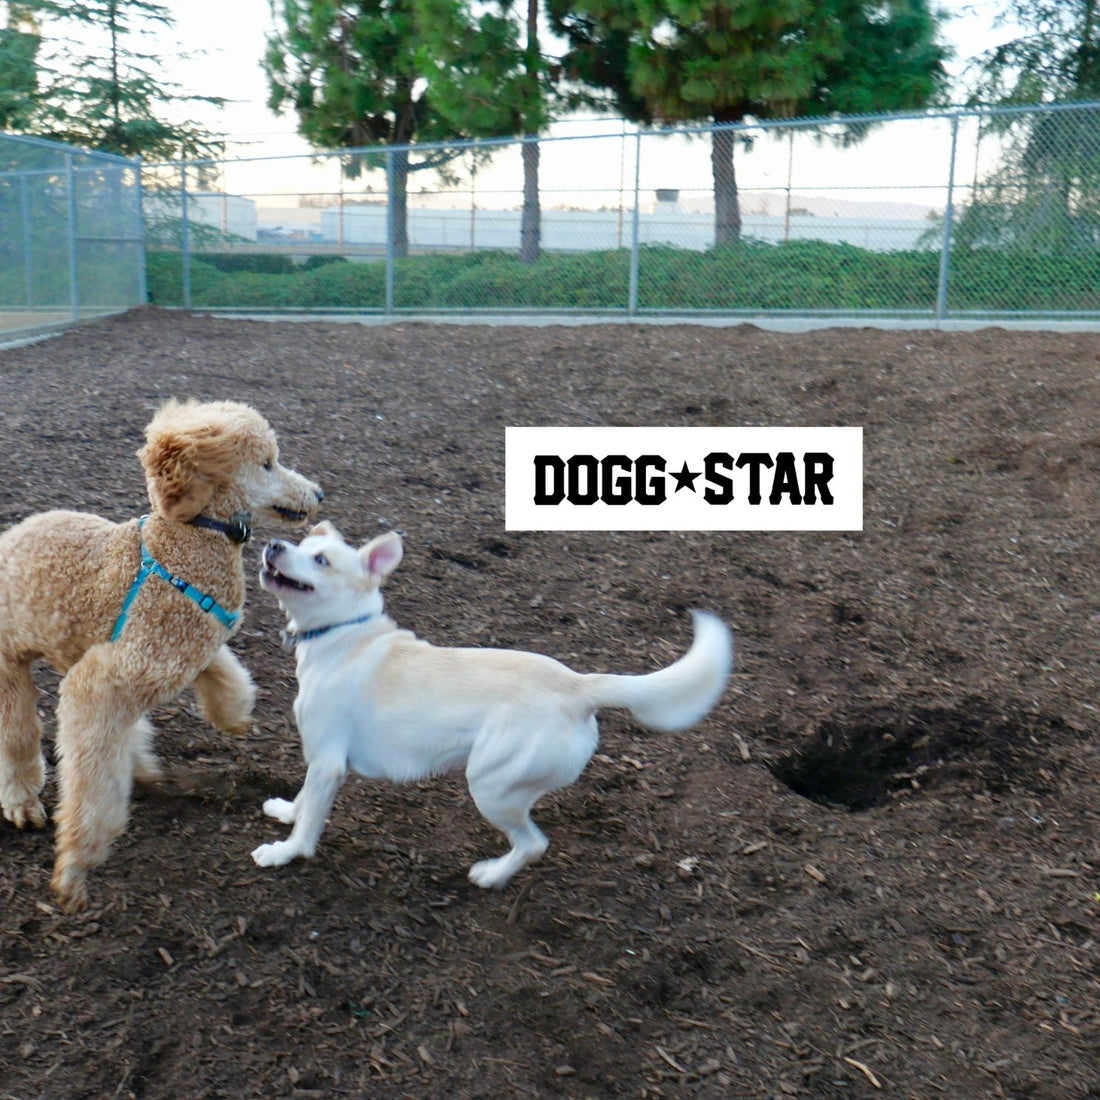 Andare la parco col proprio cane. La guida di Dogg Star.